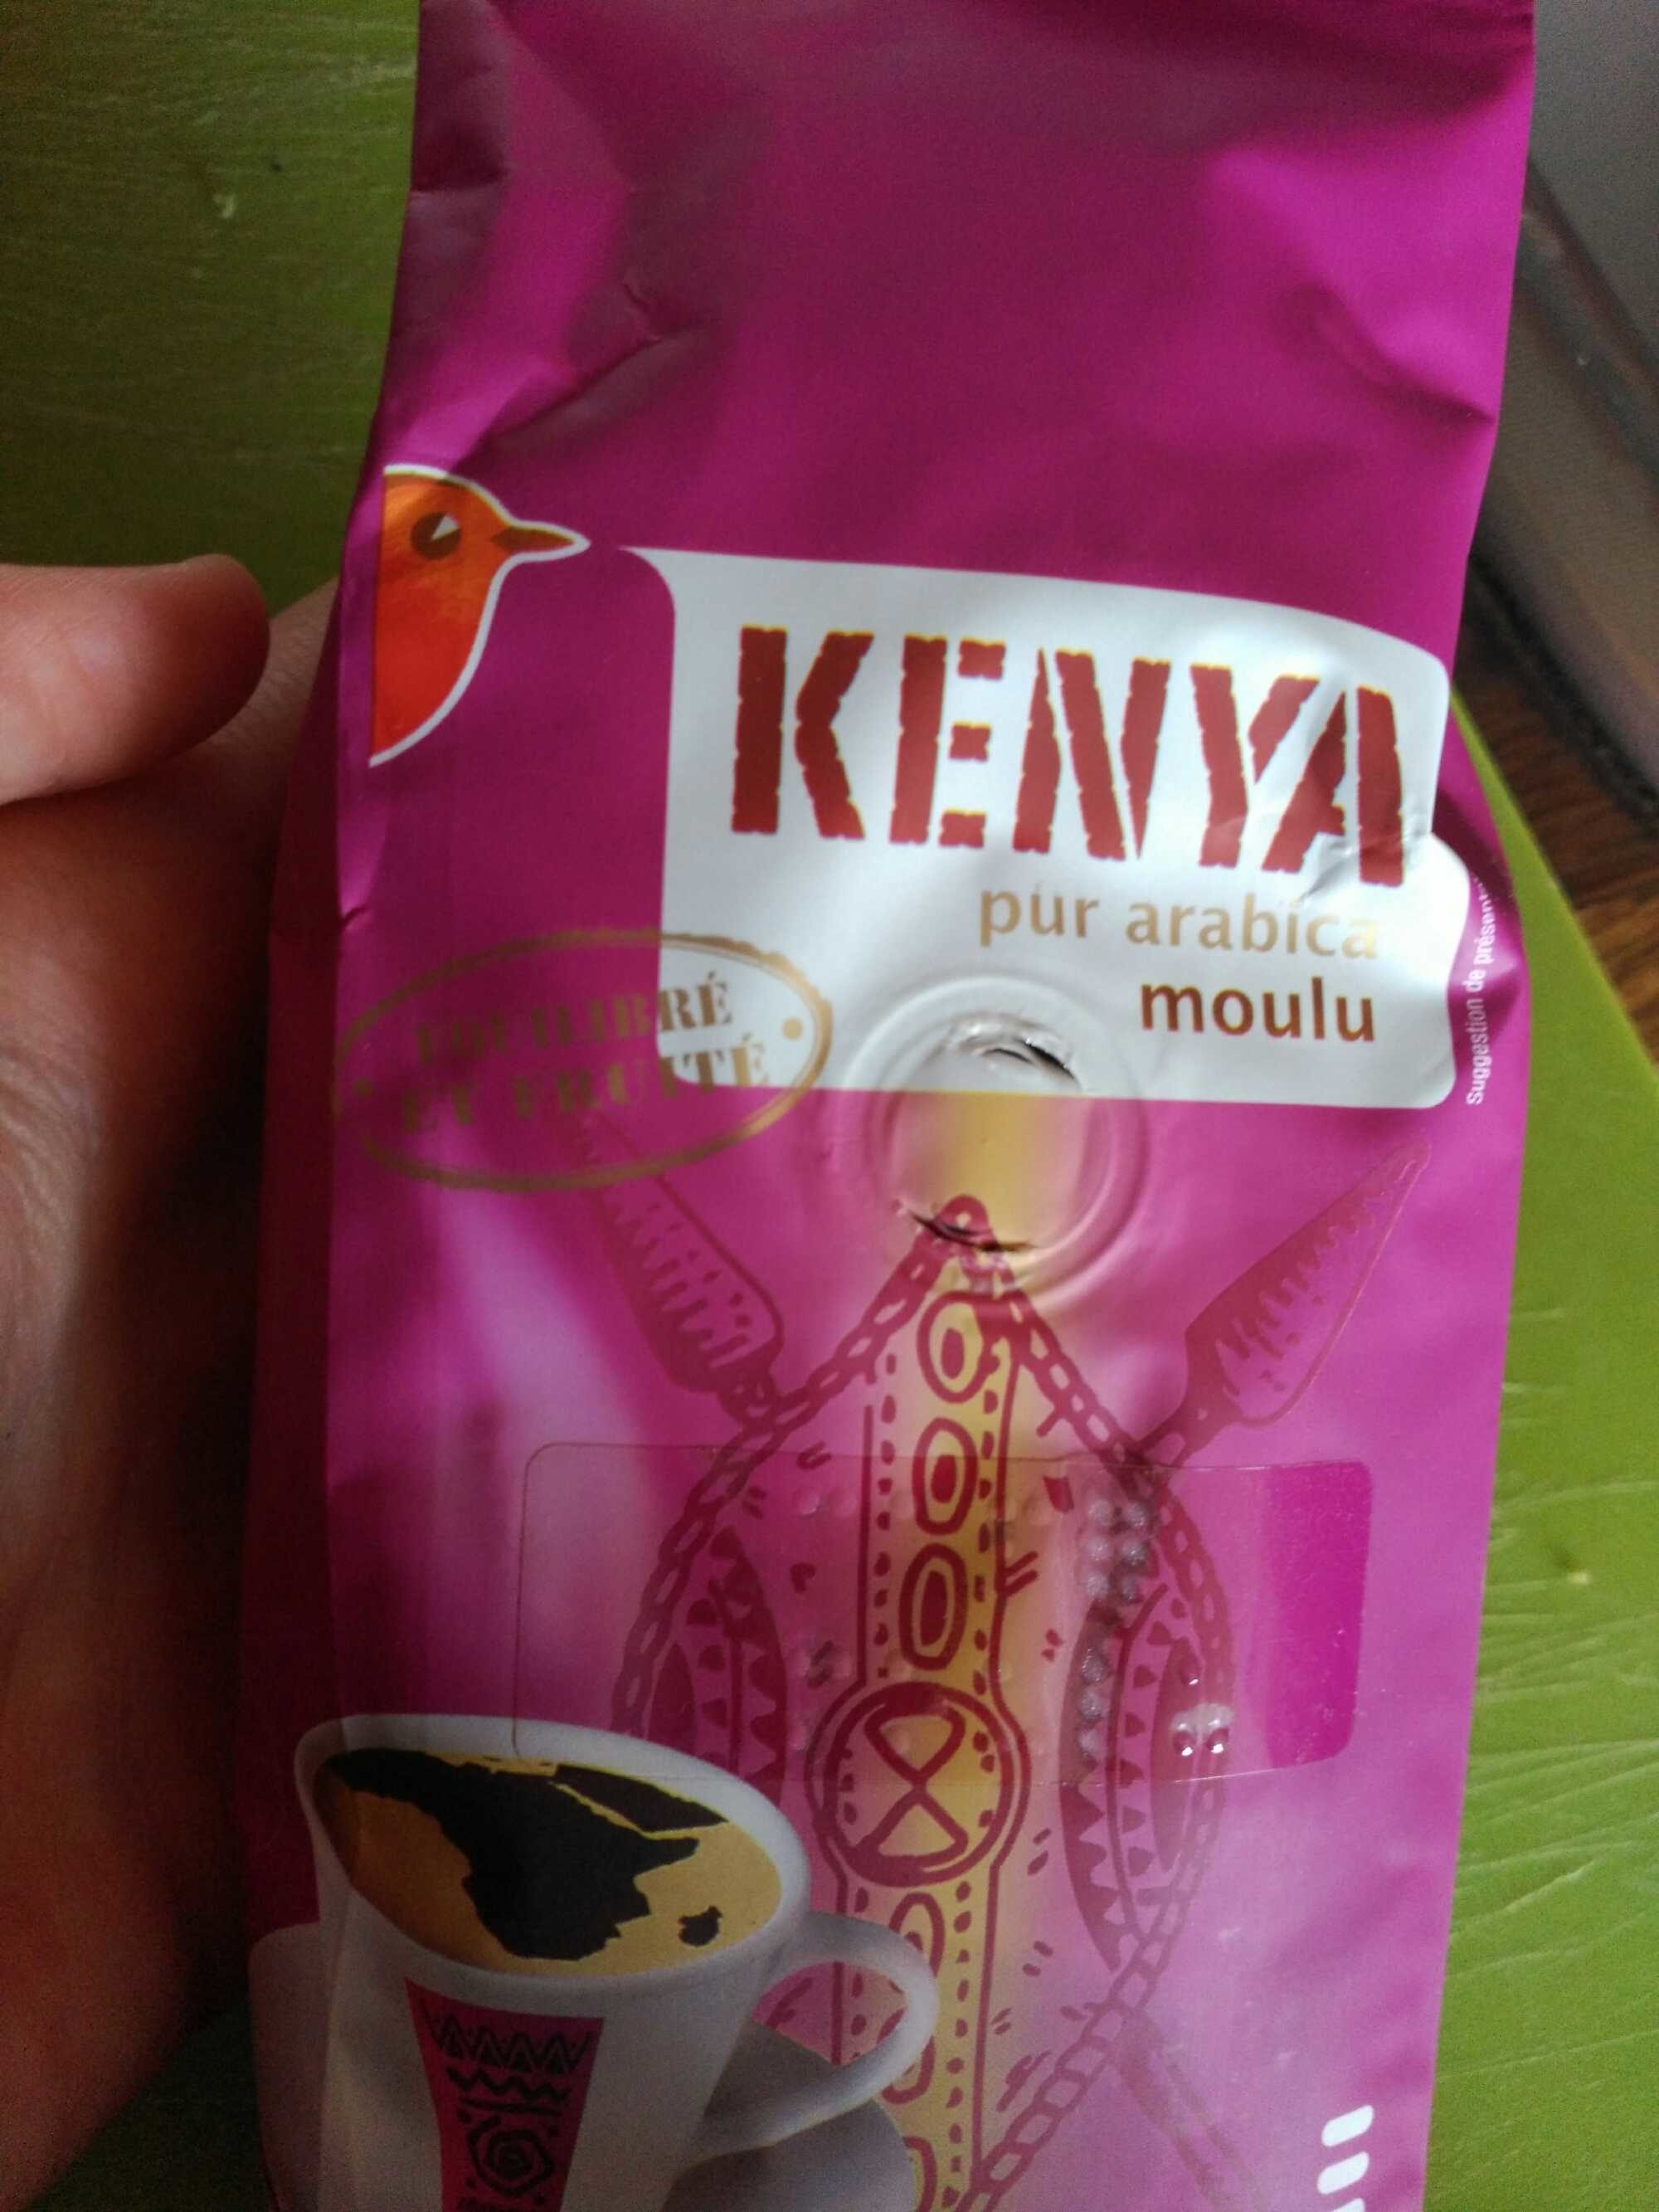 Kenya pur arabica moulu - Product - fr